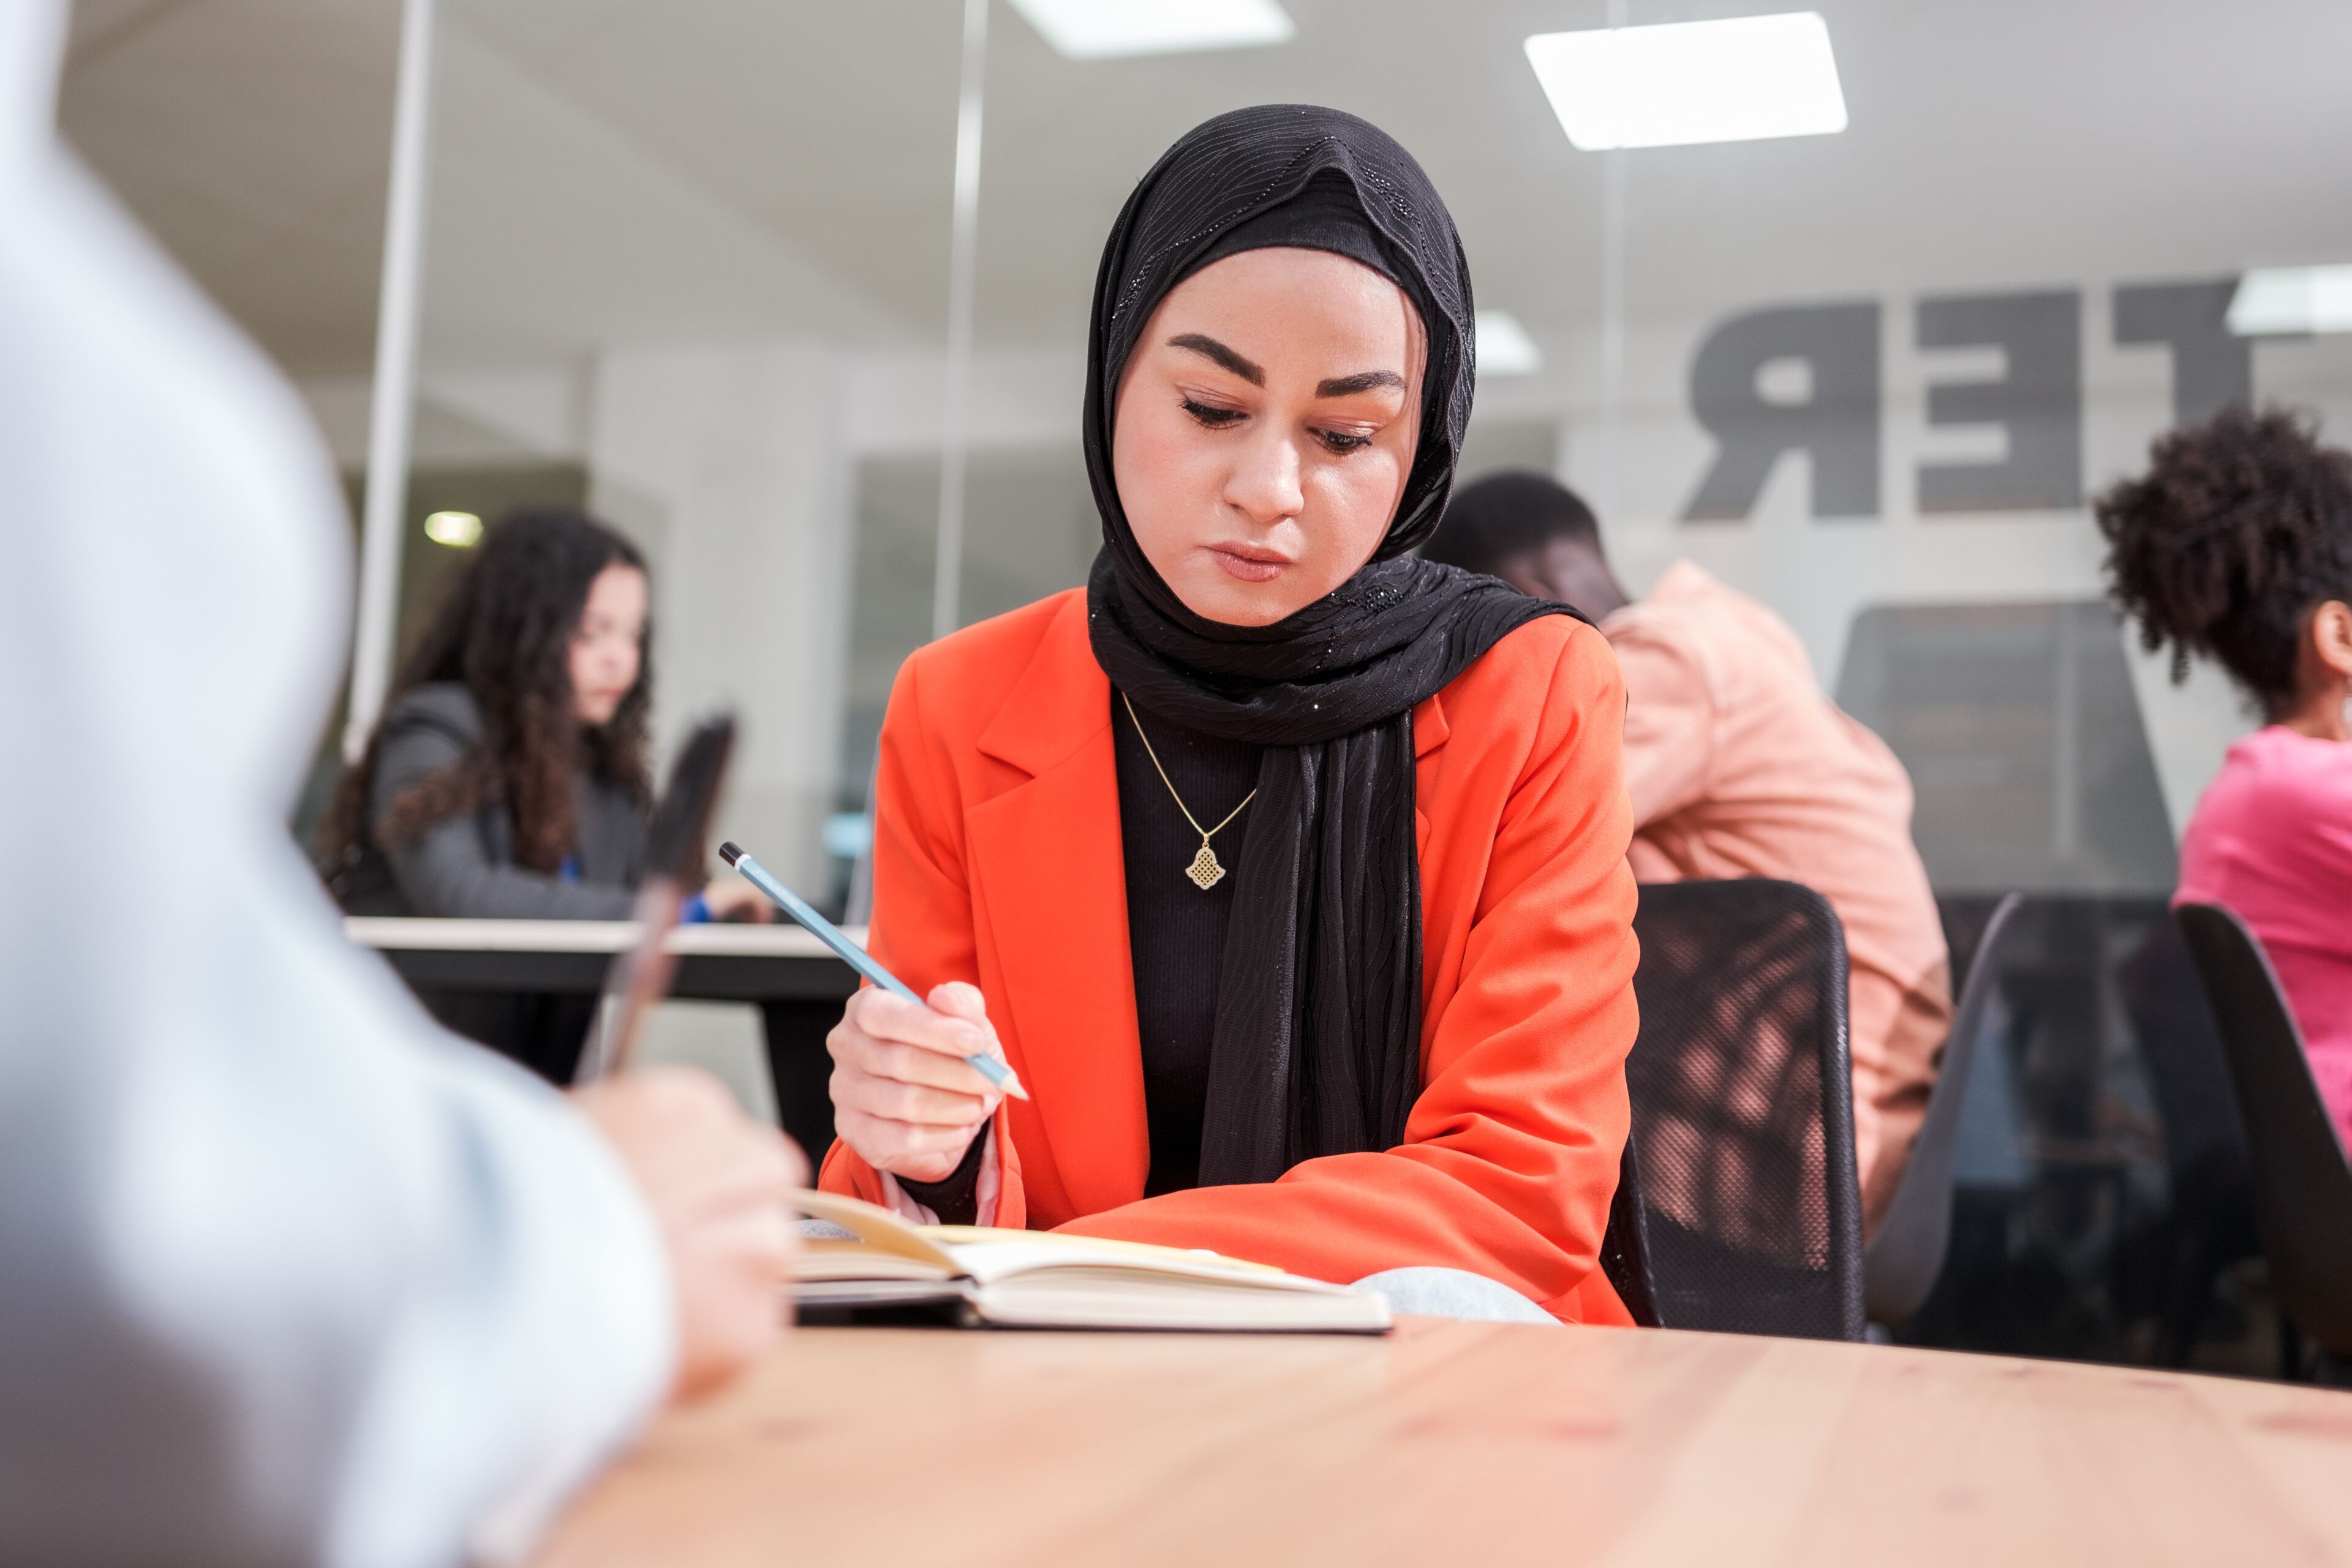 Une femme concentrée en hijab prenant des notes à une table d'étude animée.